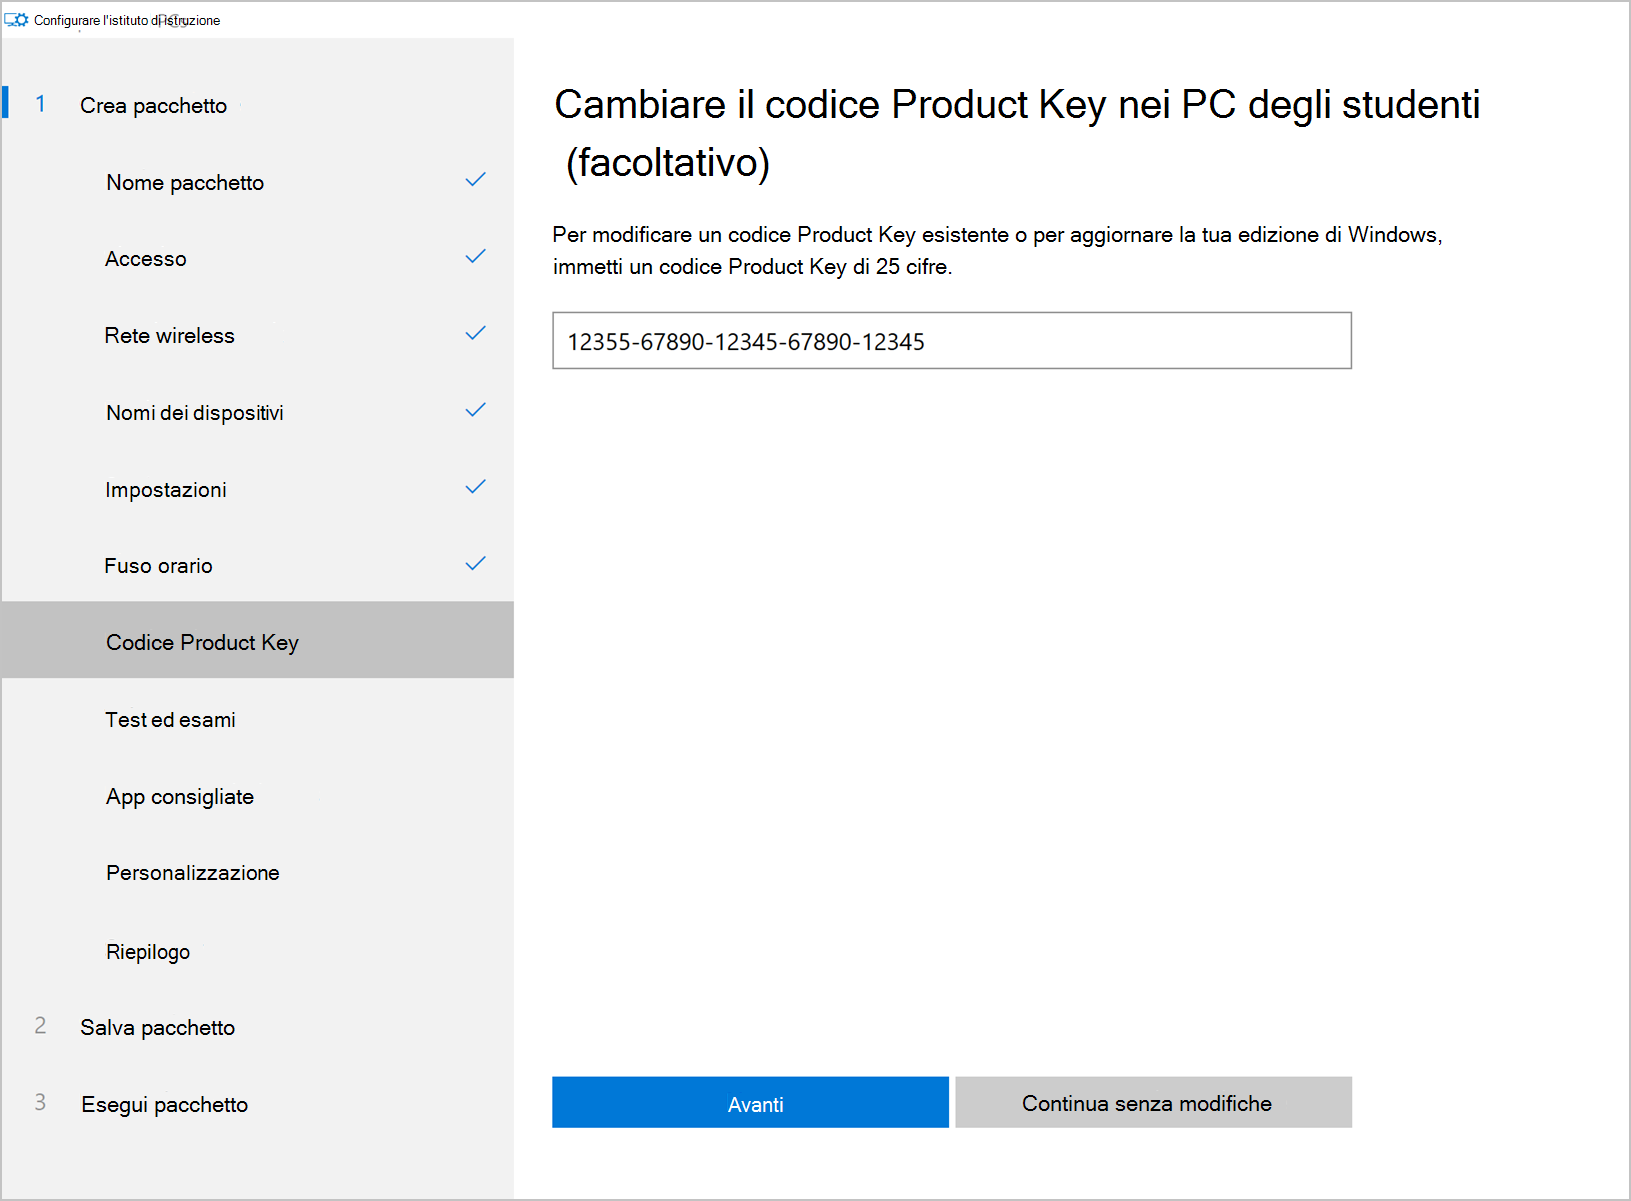 Screenshot di esempio dell'opzione Configura app PC dell'istituto di istruzione, schermata Codice Product Key, che mostra un campo valore, il pulsante Avanti e l'opzione Continua senza modifiche.